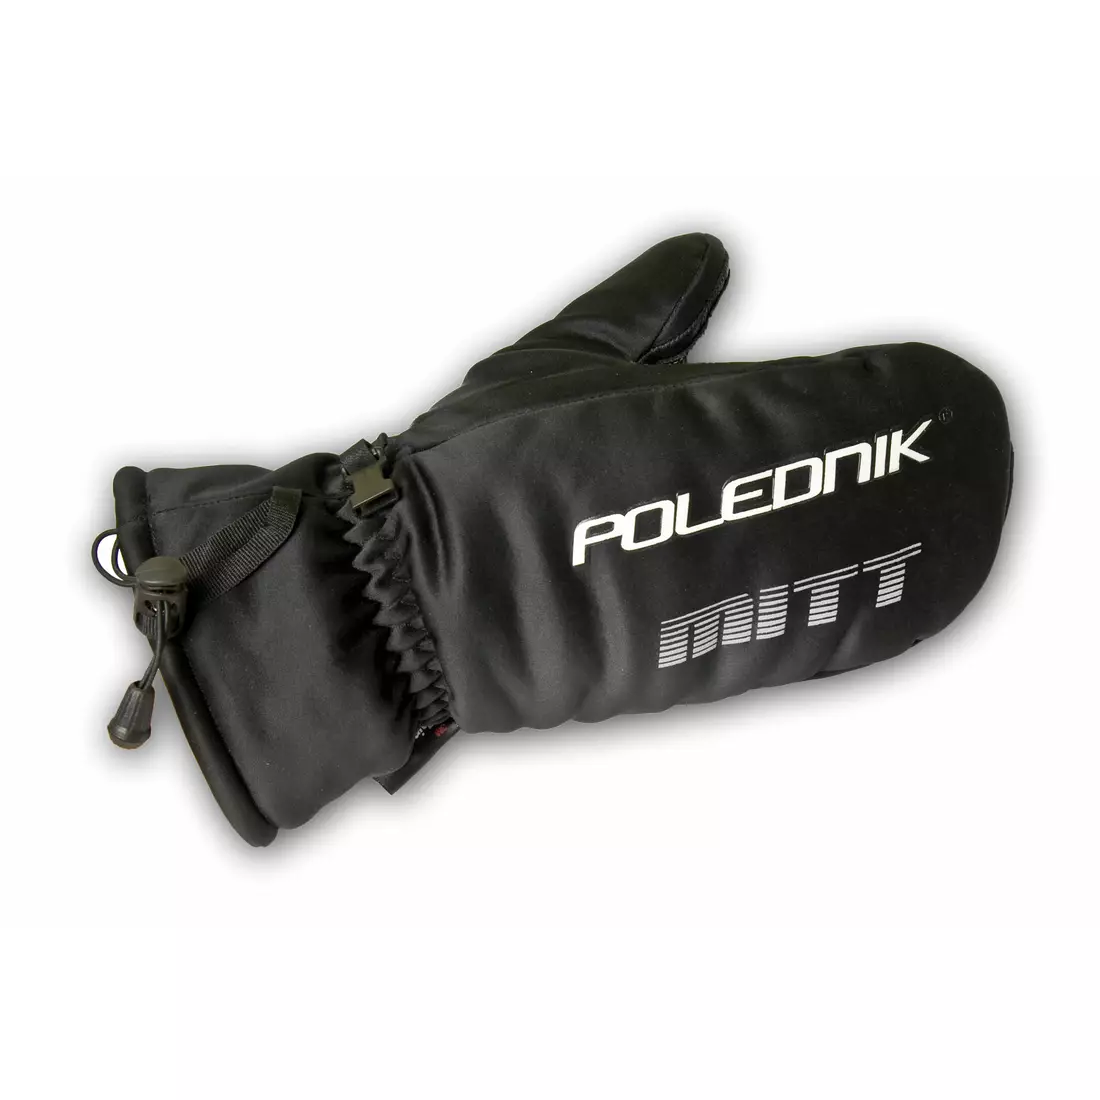 POLEDNIK zimní rukavice MITT, barva: černá